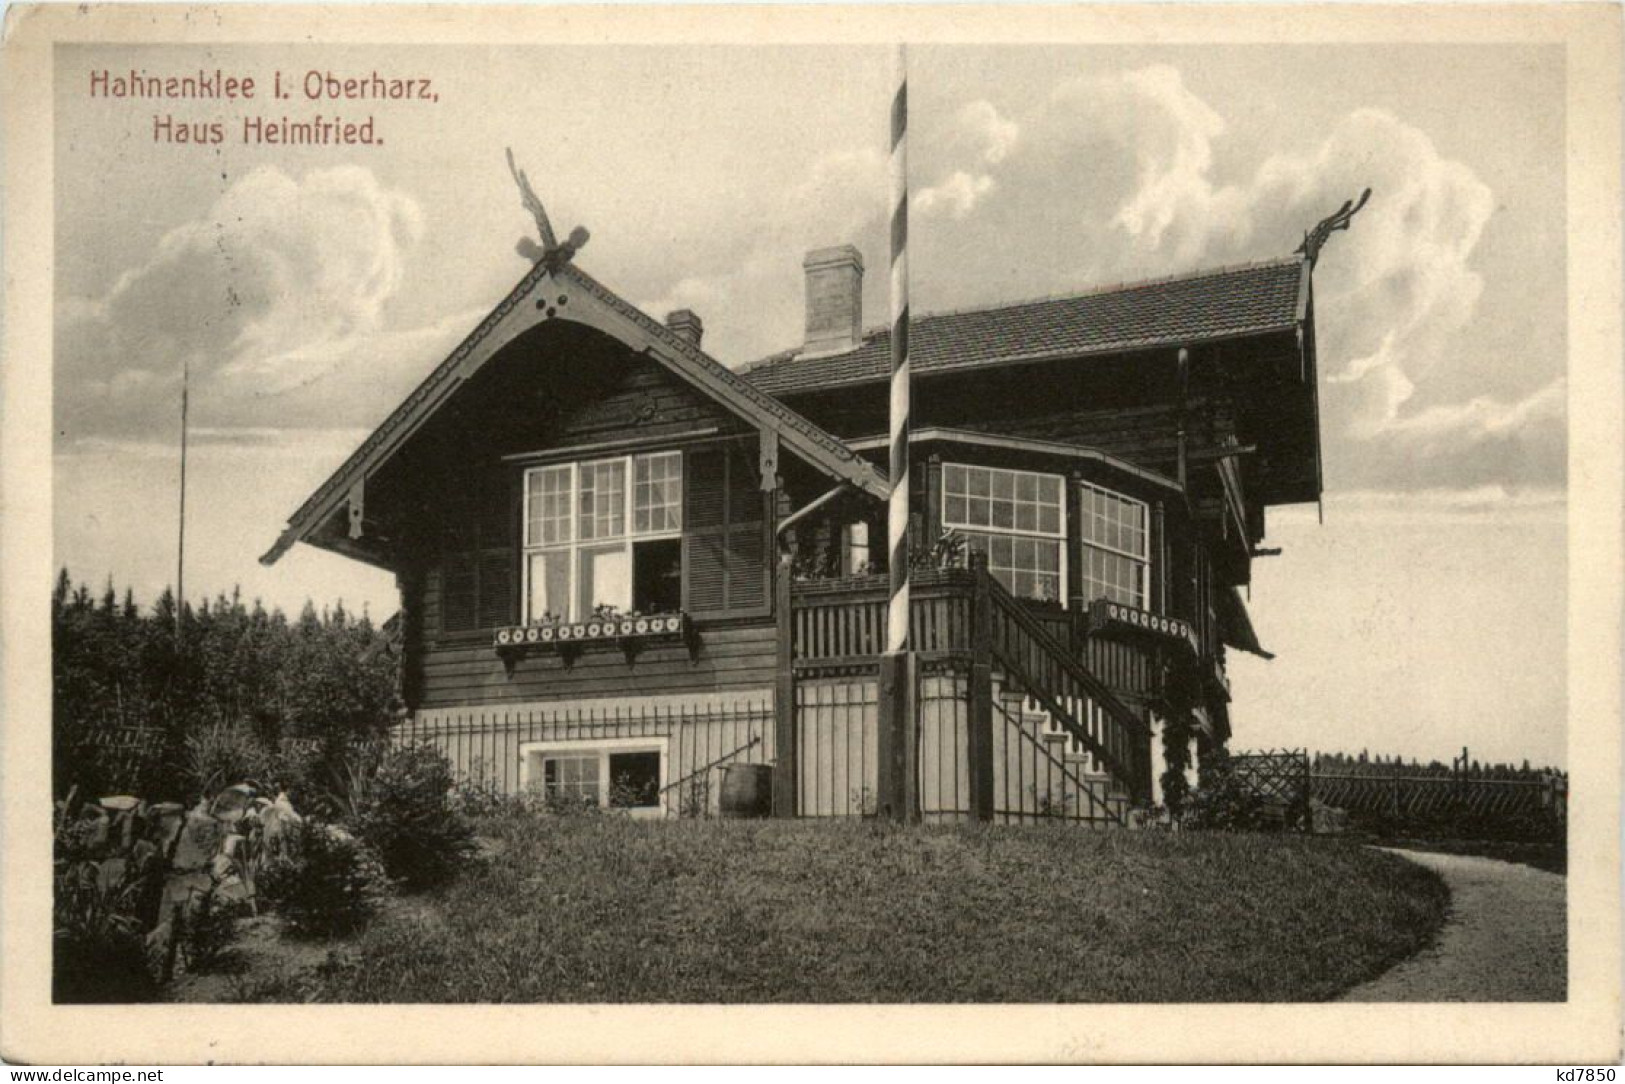 Hahnenklee I. Oberharz, Haus Heimfried - Goslar